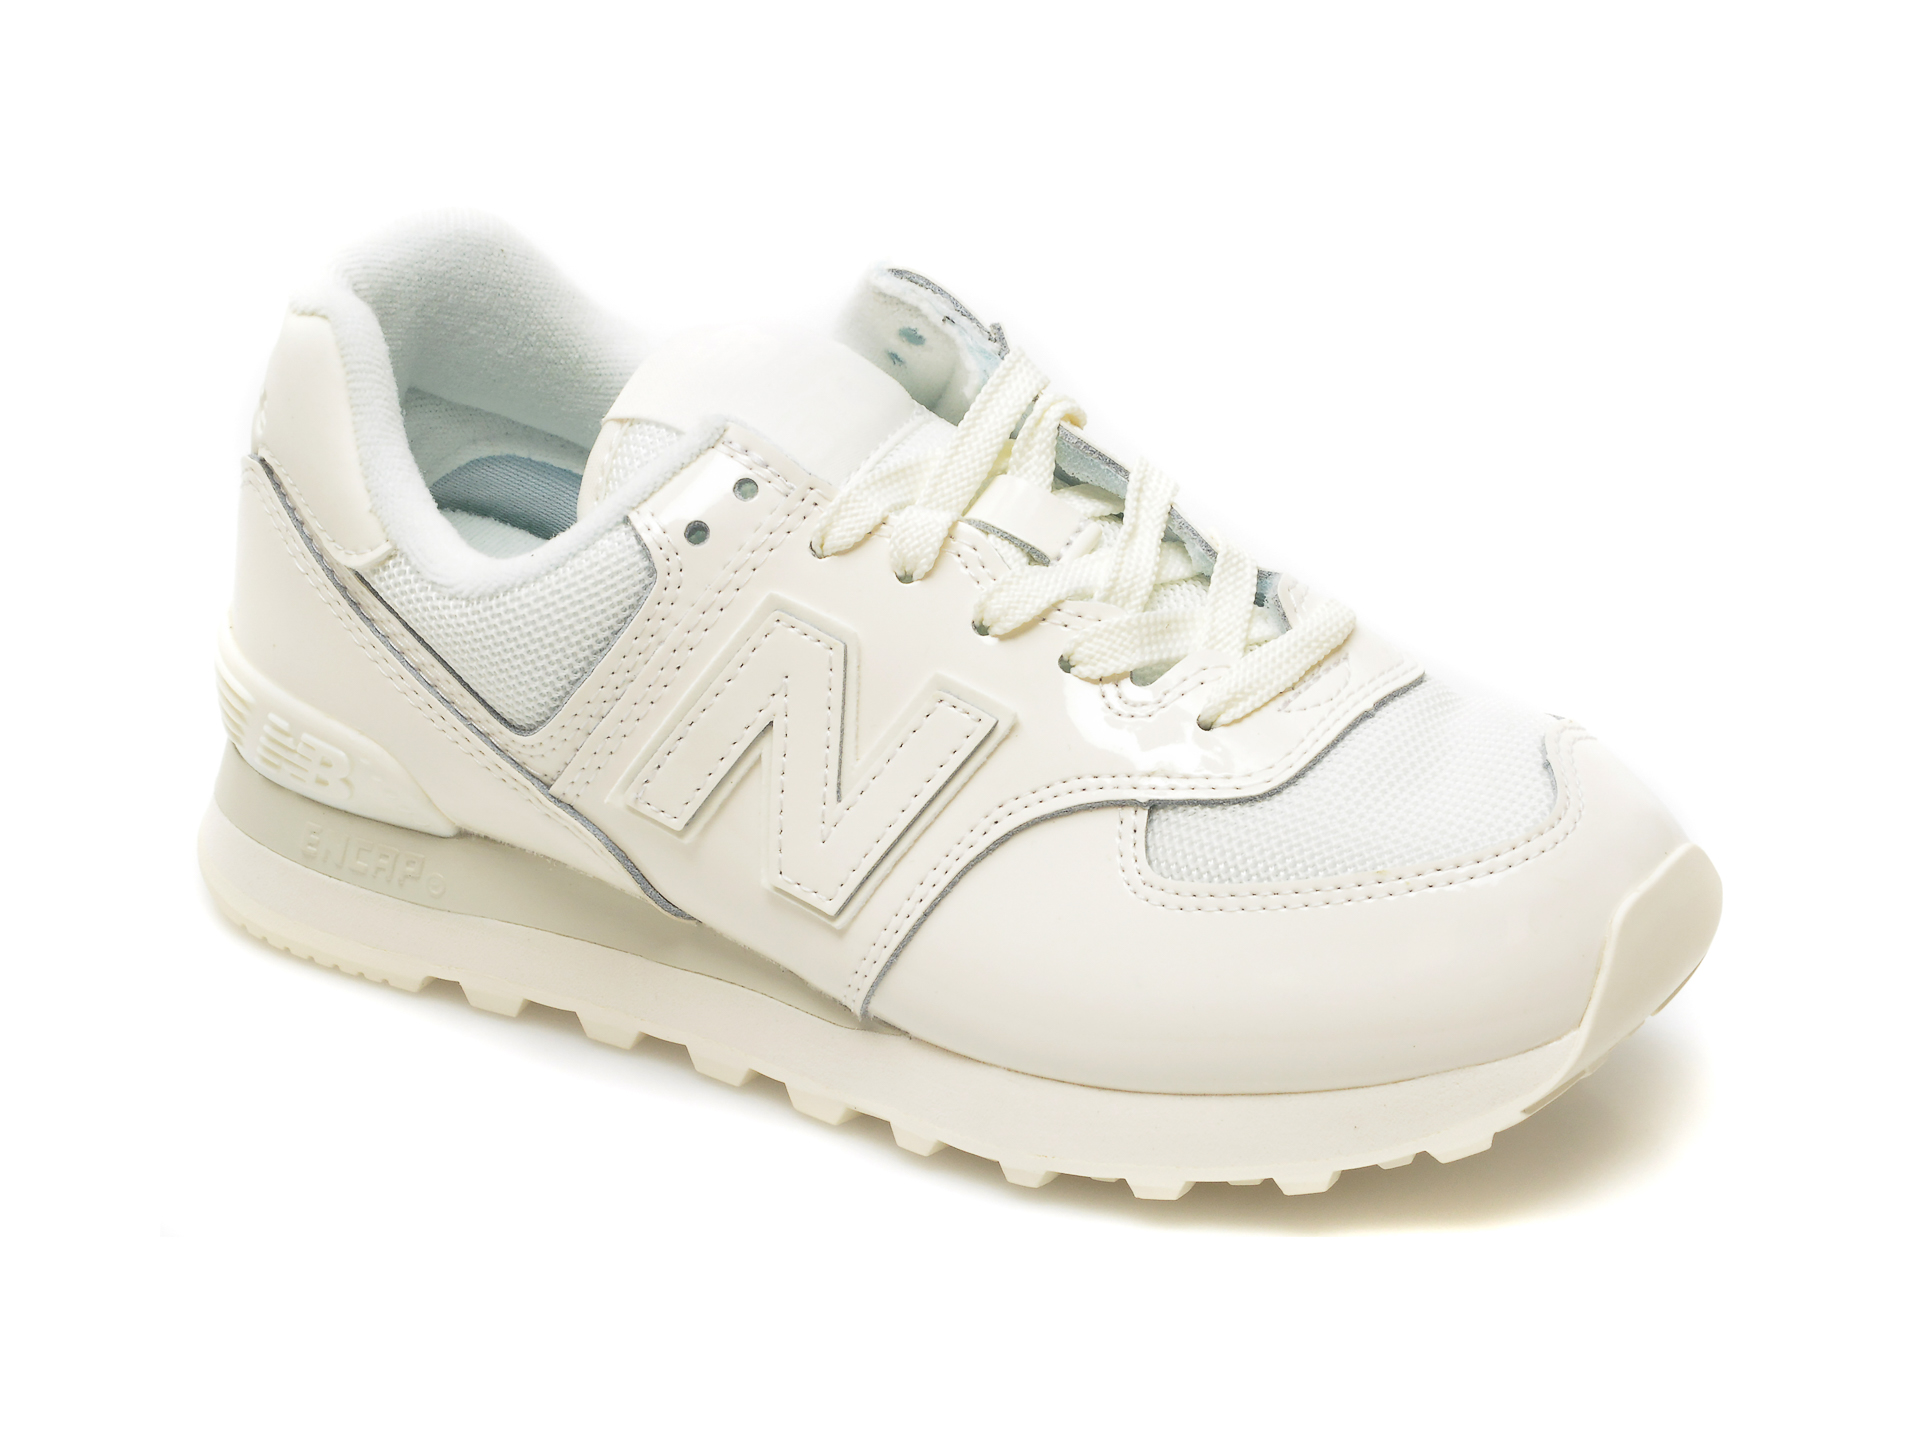 Pantofi sport NEW BALANCE albi, WL574, din material textil si piele naturala New Balance